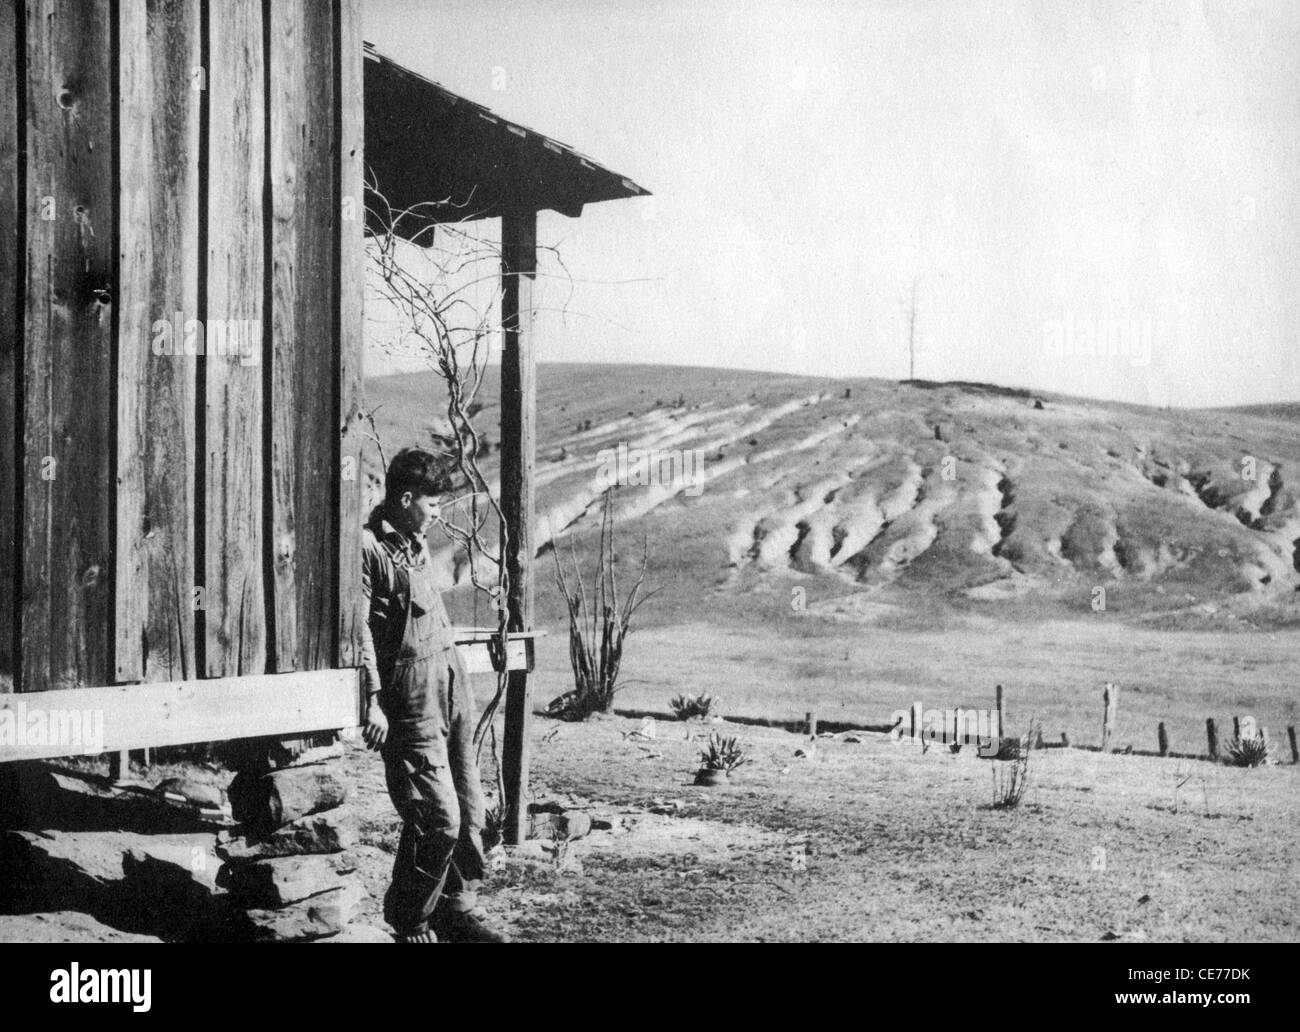 AMERIKANISCHEN DEPRESSION Dustbowl Bedingungen durch Erosion von Ackerland in den 1930er Jahren Stockfoto